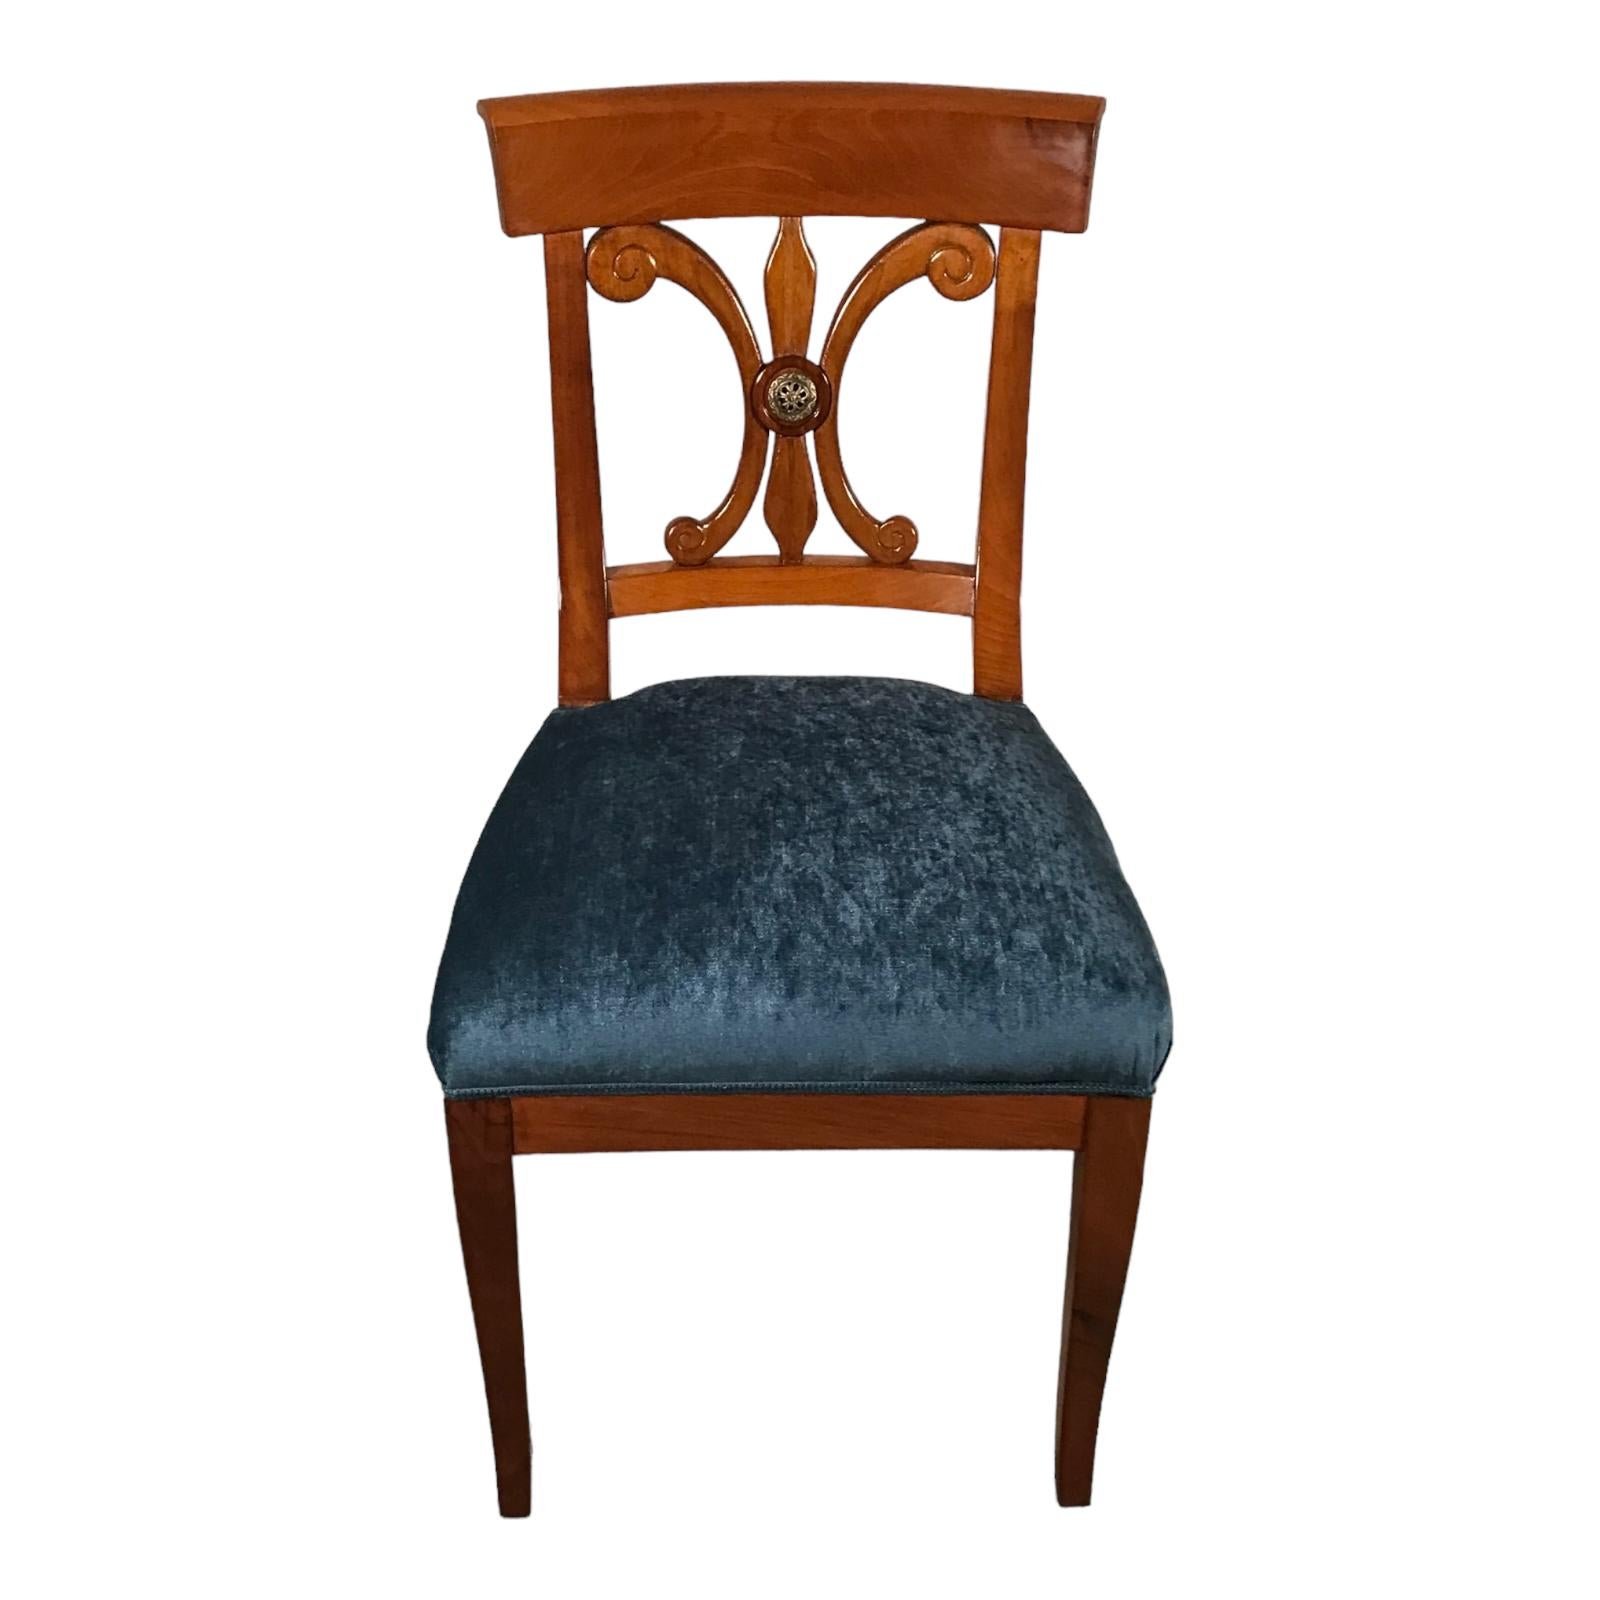 Authentische Biedermeier Stühle  Handgefertigte Meisterwerke aus dem 19.

Entdecken Sie unser atemberaubendes Set aus 6 originalen Biedermeier-Stühlen, die exquisite Handwerkskunst aus dem frühen 19. Jahrhundert präsentieren. Diese mit viel Liebe